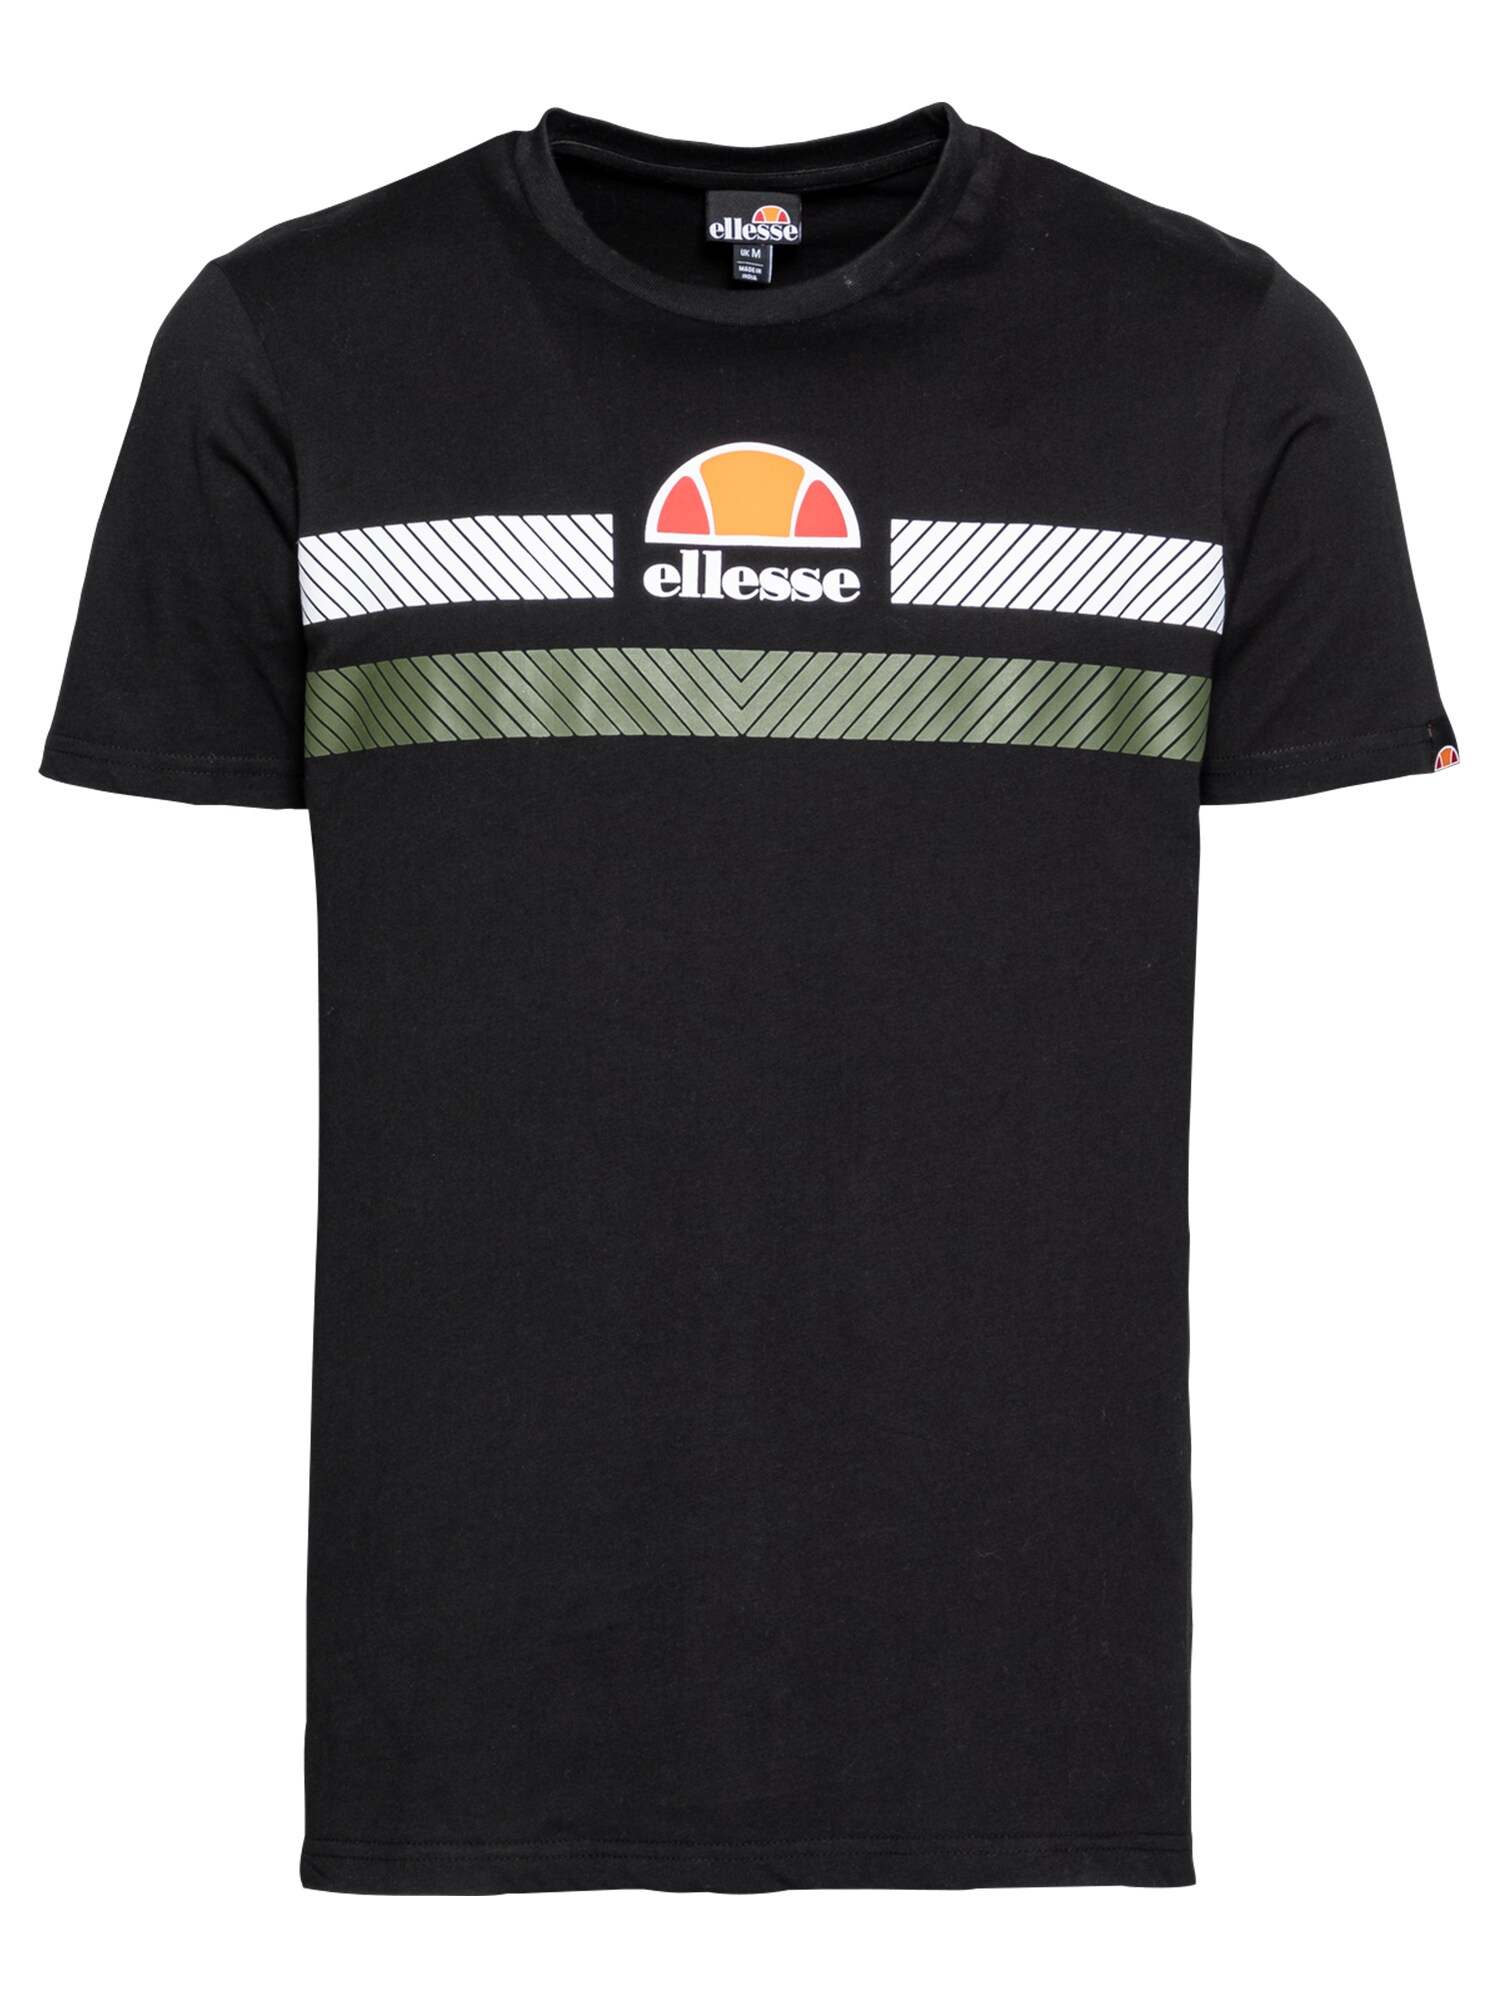 ELLESSE Marškinėliai 'Glisenta'  juoda / balta / žalia / oranžinė / persikų spalva